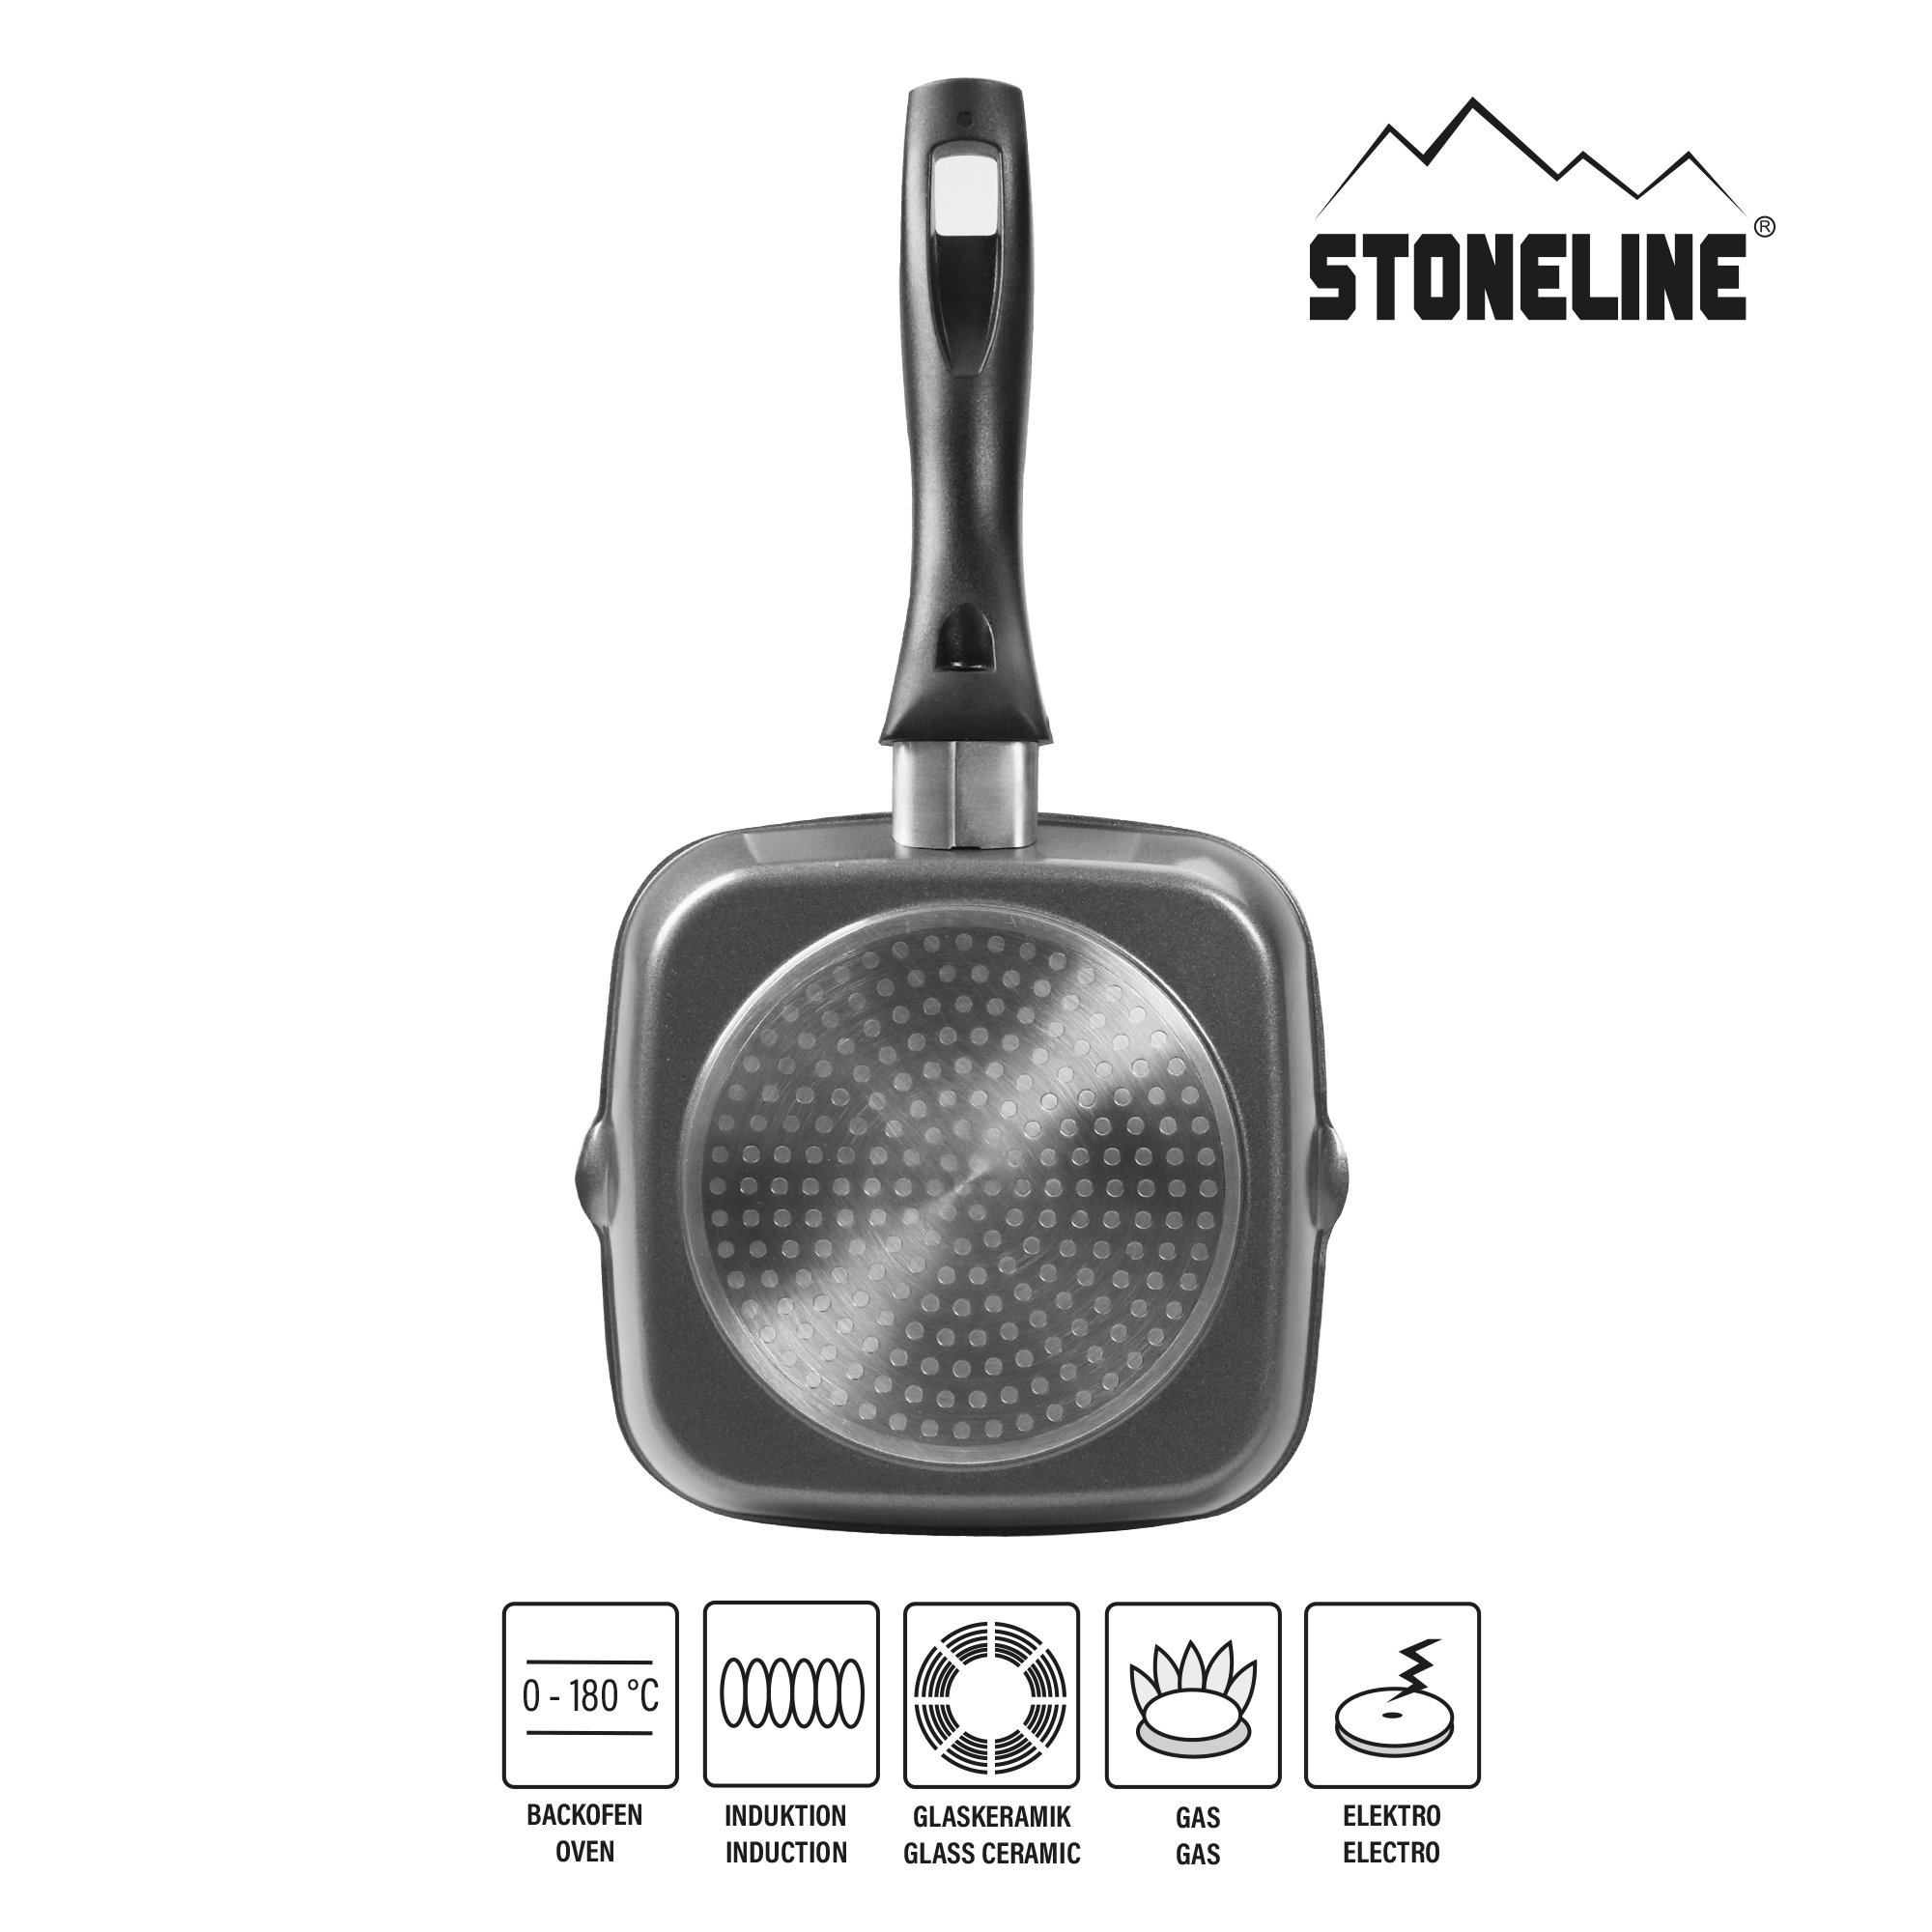 STONELINE® BBQ Griddle Pan 16 cm, 2 Spouts, Non-Stick Pan | CLASSIC